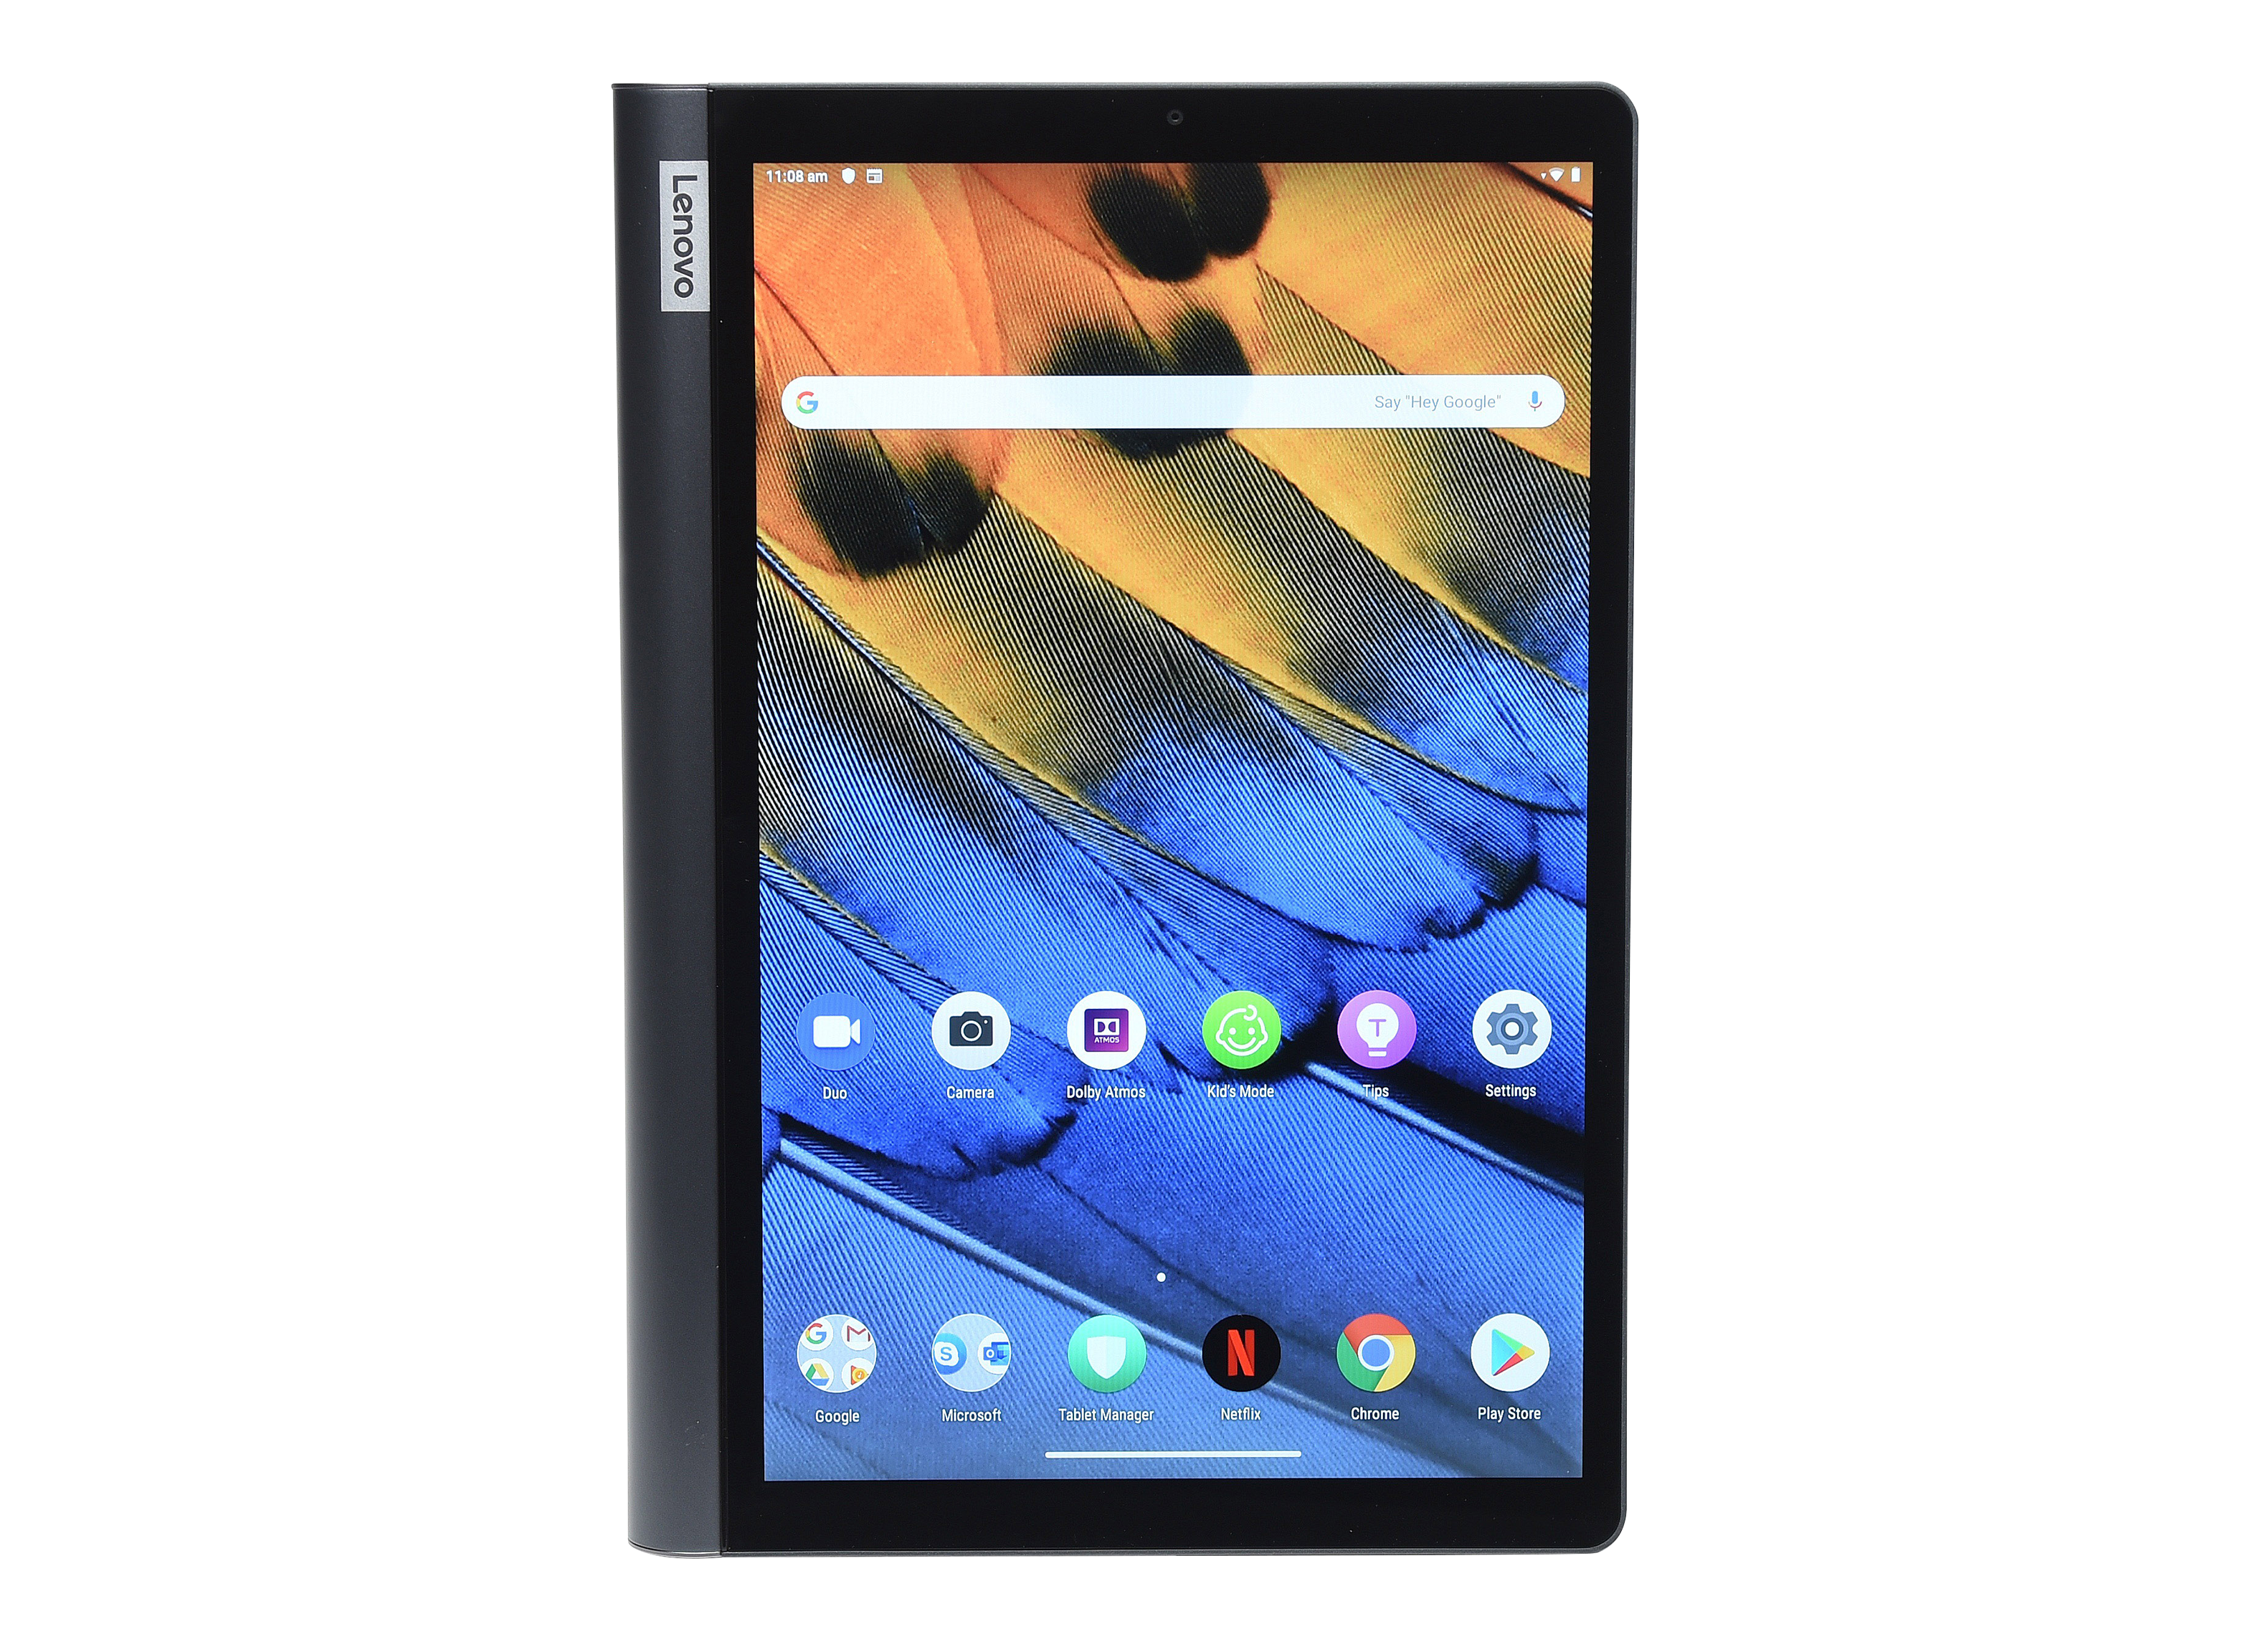 Lenovo Smart Tablet Google Assistant